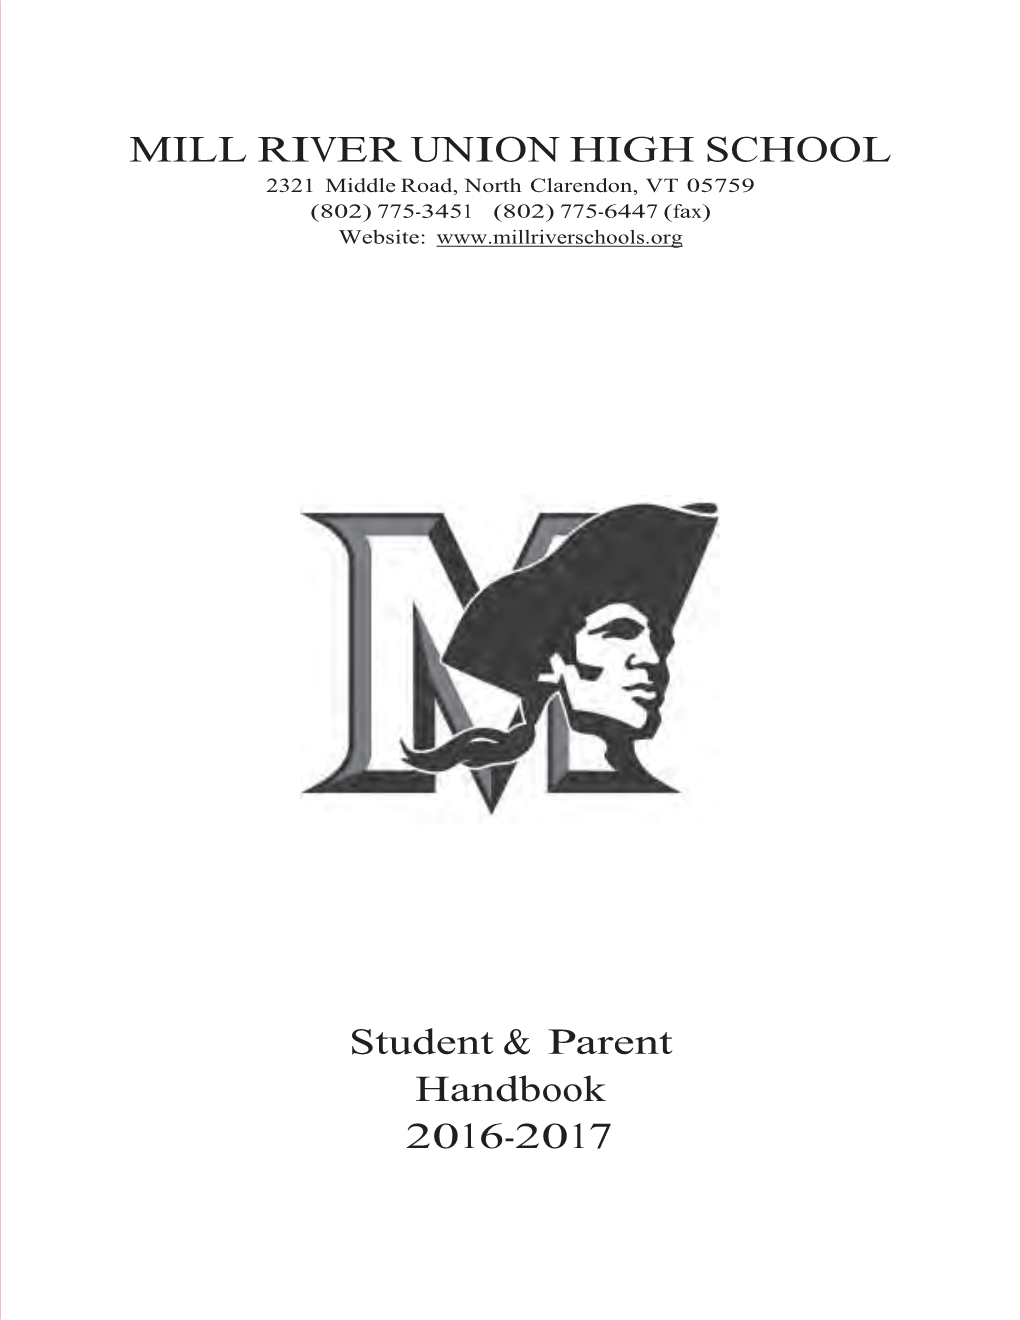 MRUHS Handbook 2016-17 Complete.Indd